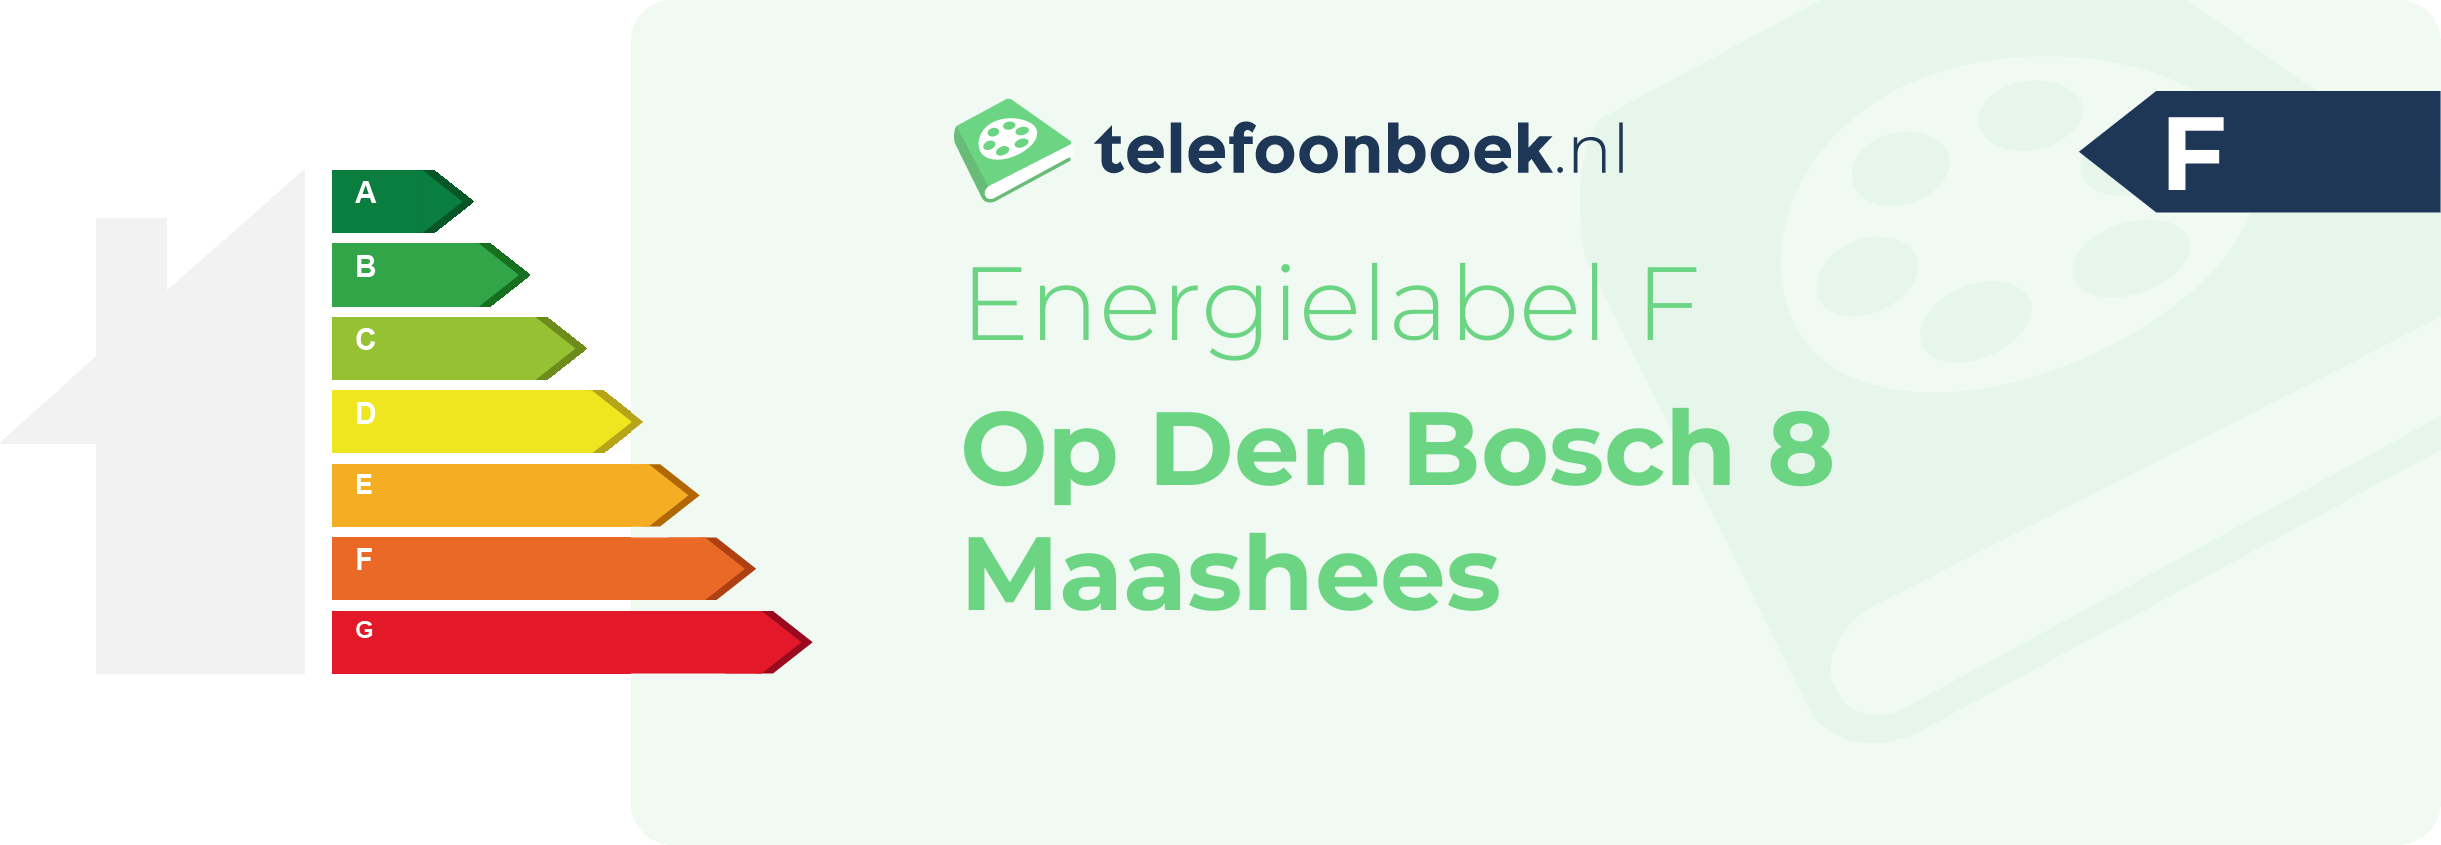 Energielabel Op Den Bosch 8 Maashees